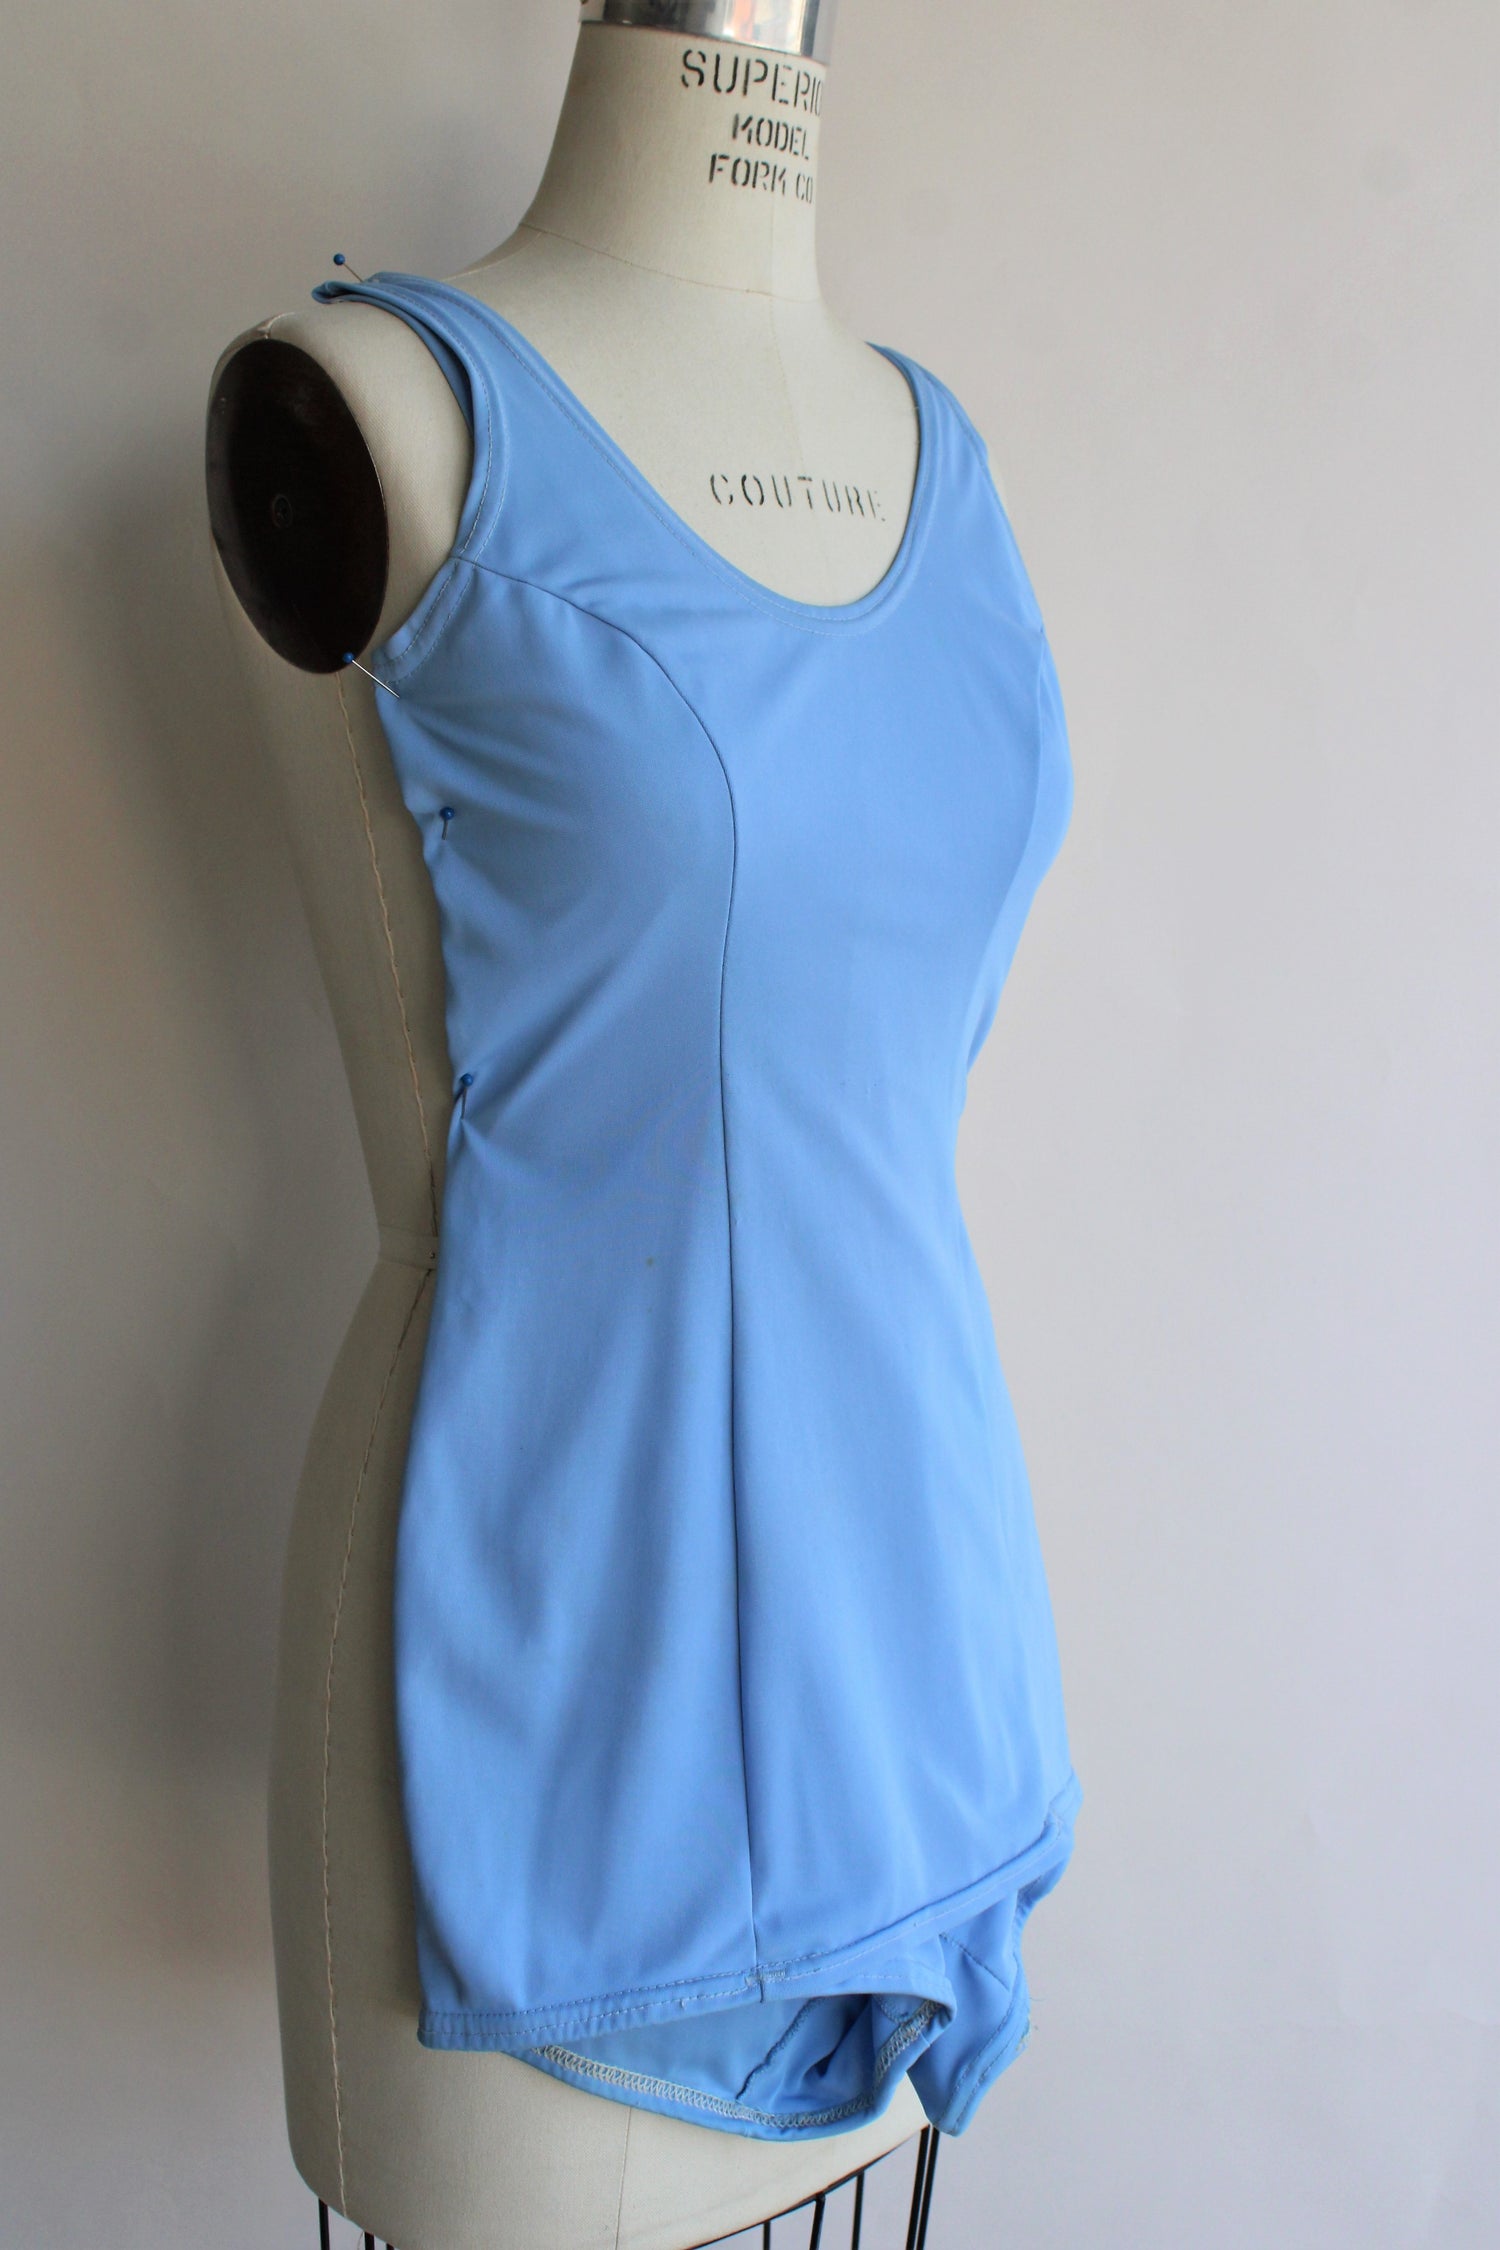 Vintage 1960s Aldrich & Aldrich Blue Skirted Swimsuit